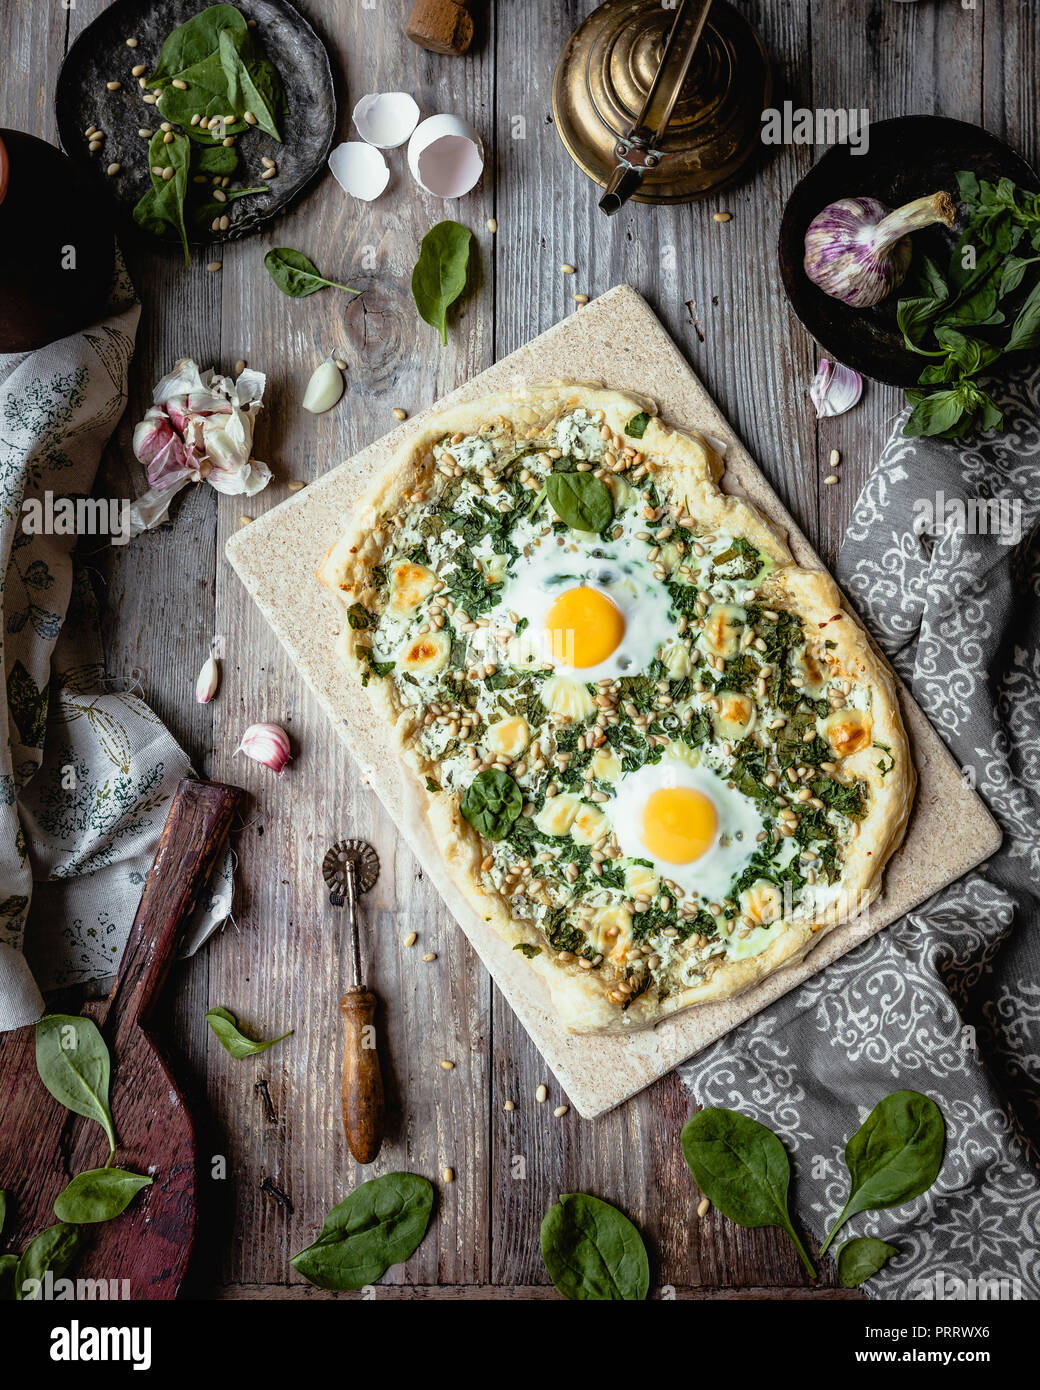 Vista in elevazione della pizza fatta in casa con le uova e le erbe sul pannello di legno Foto Stock